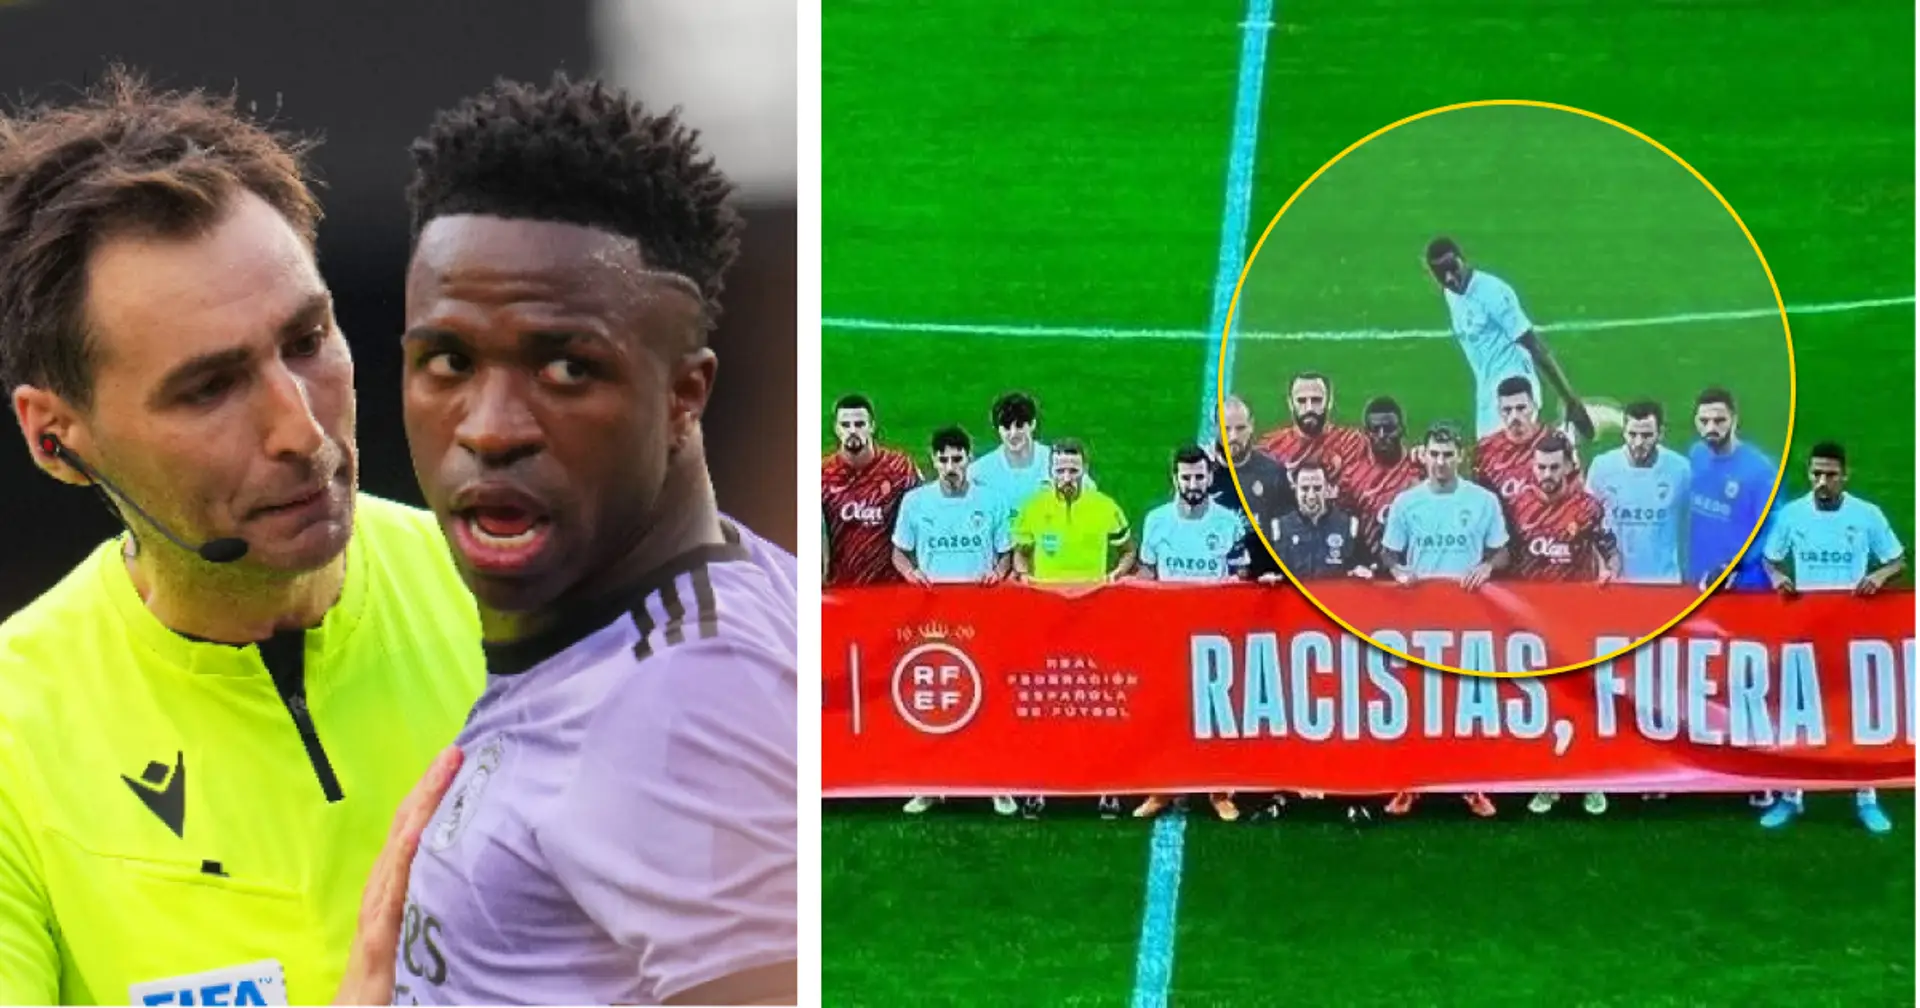 Valencia-Spieler Mouctar Diakhaby weigert sich, ein Anti-Rassismus-Transparent zu halten - als Zeichen des Protests an La Liga